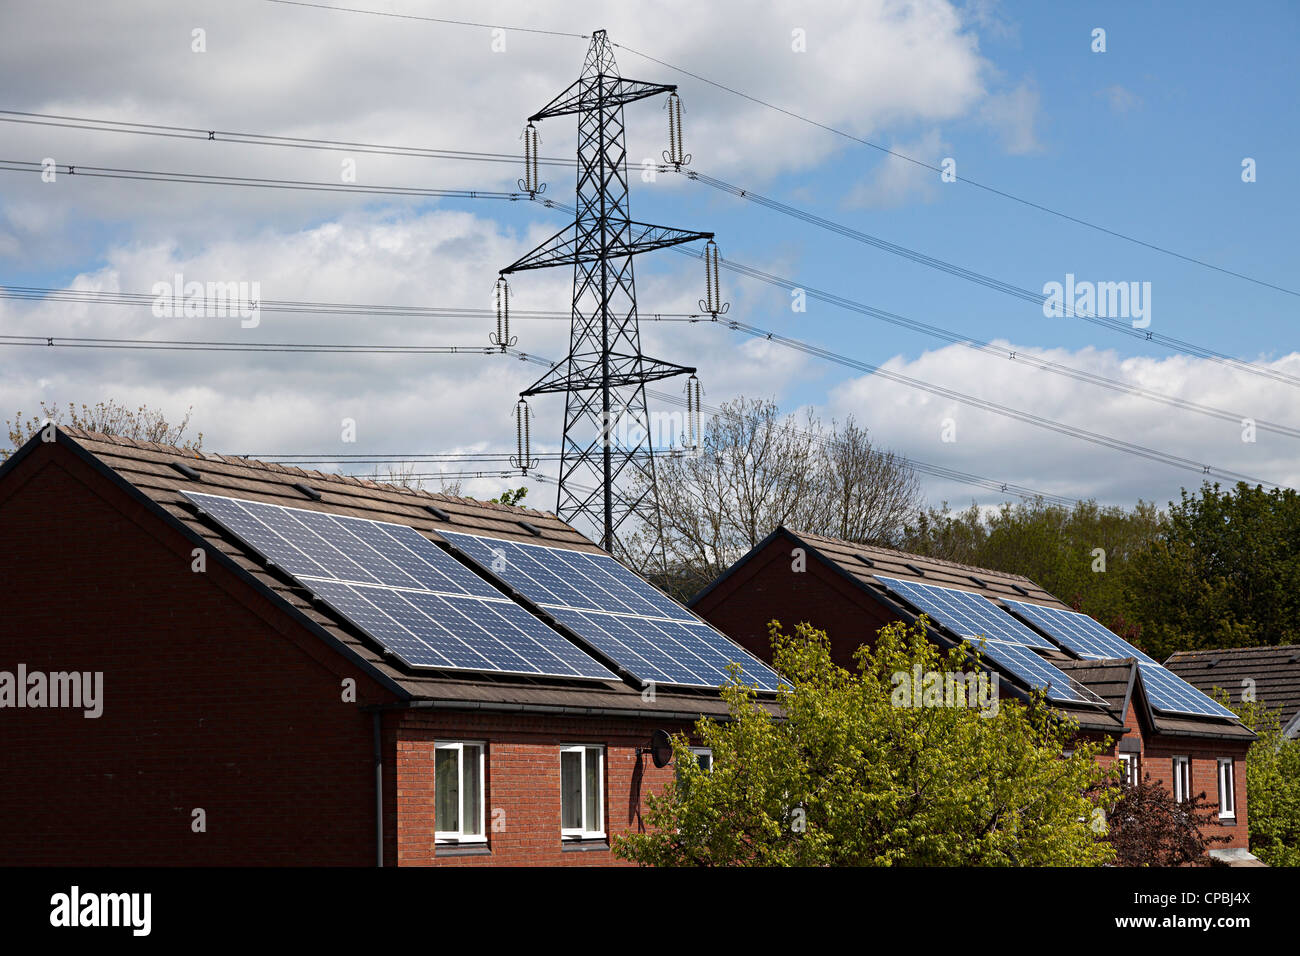 Paneles solares en viviendas con torres eléctricas detrás, Wales, REINO UNIDO Foto de stock